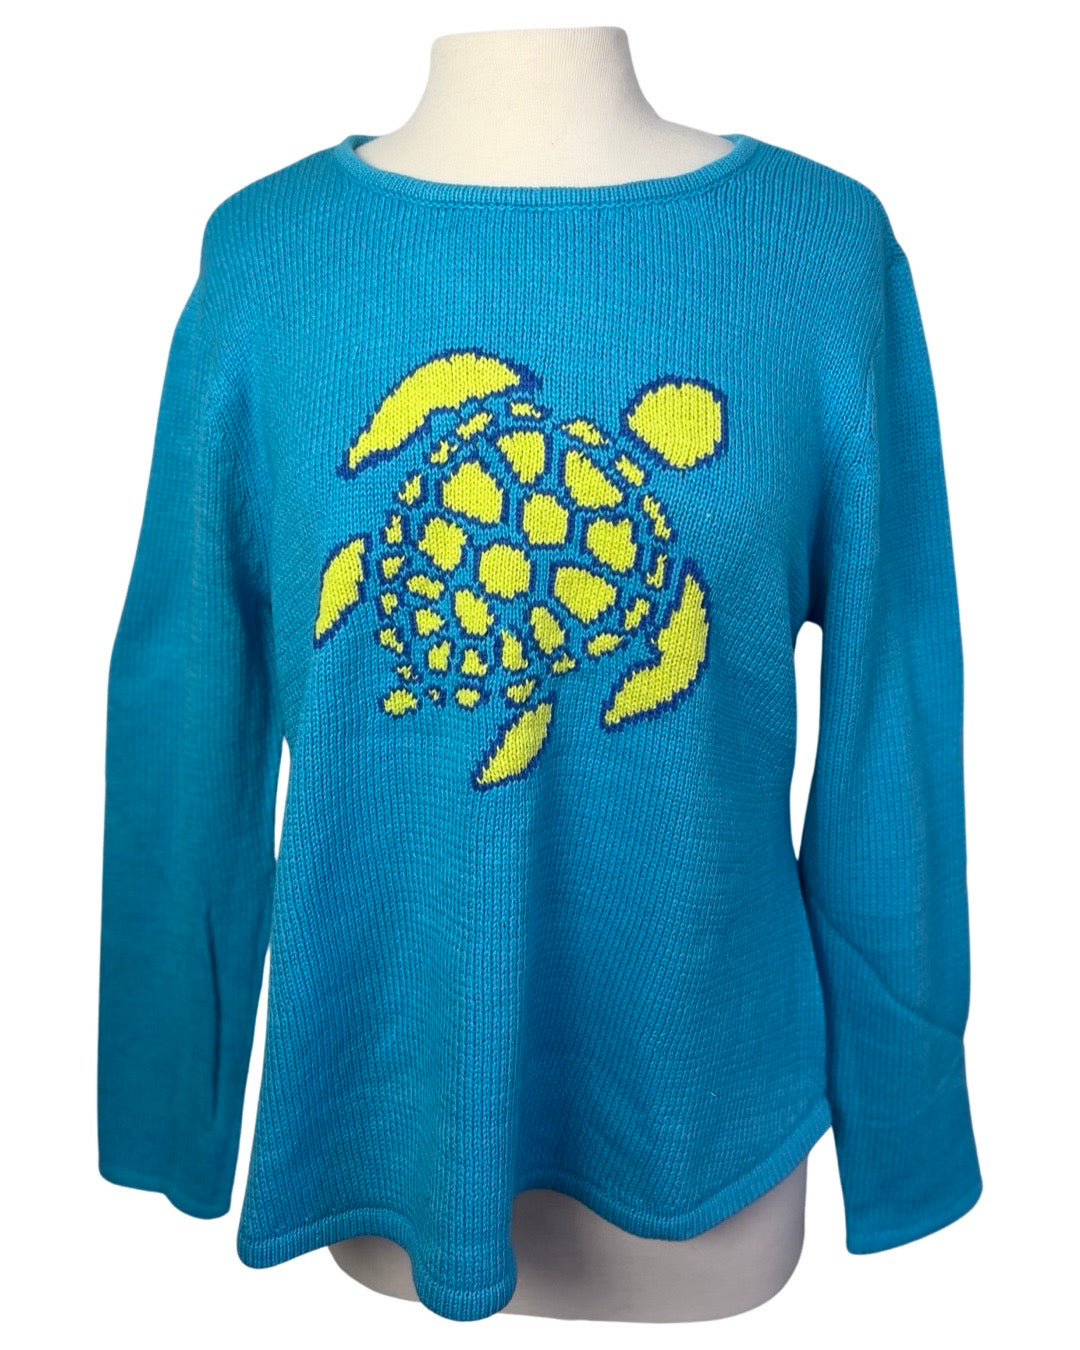 Lulu B Turtle Sweater